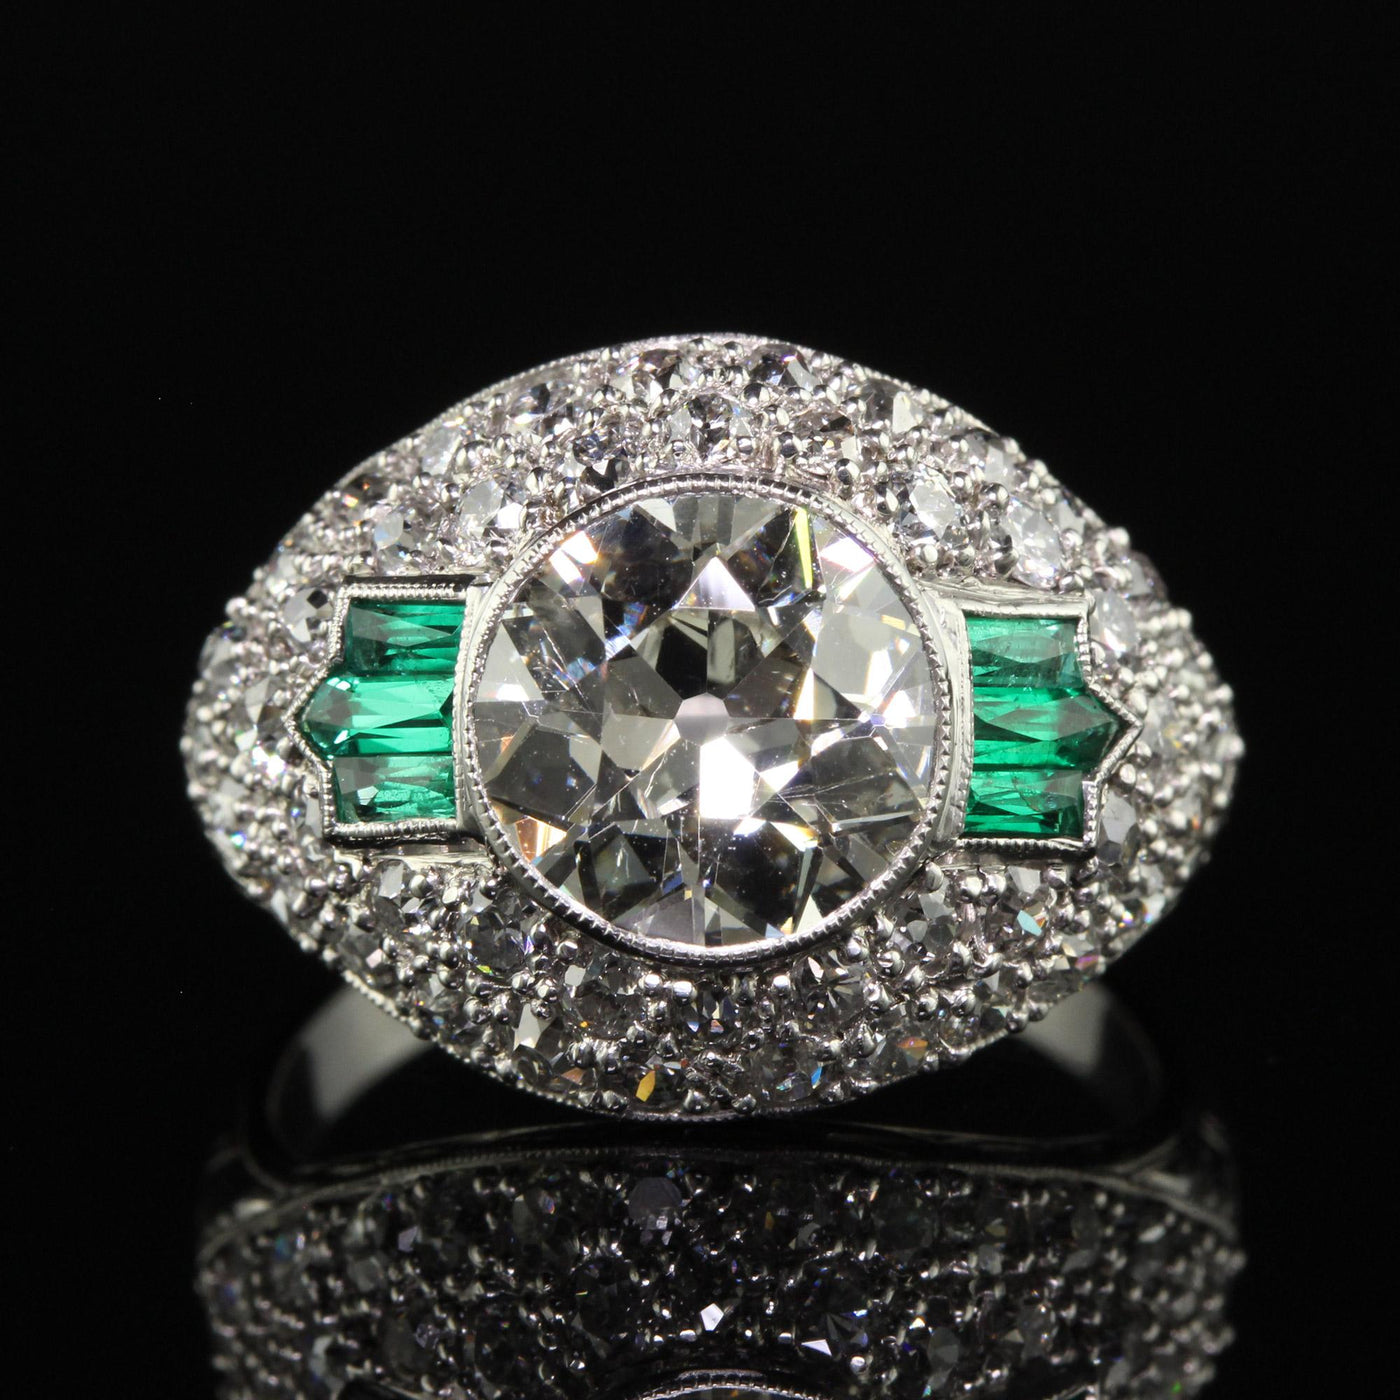 Antique Art Deco Platinum Old European Diamond and Emerald Engagement Ring - GIA